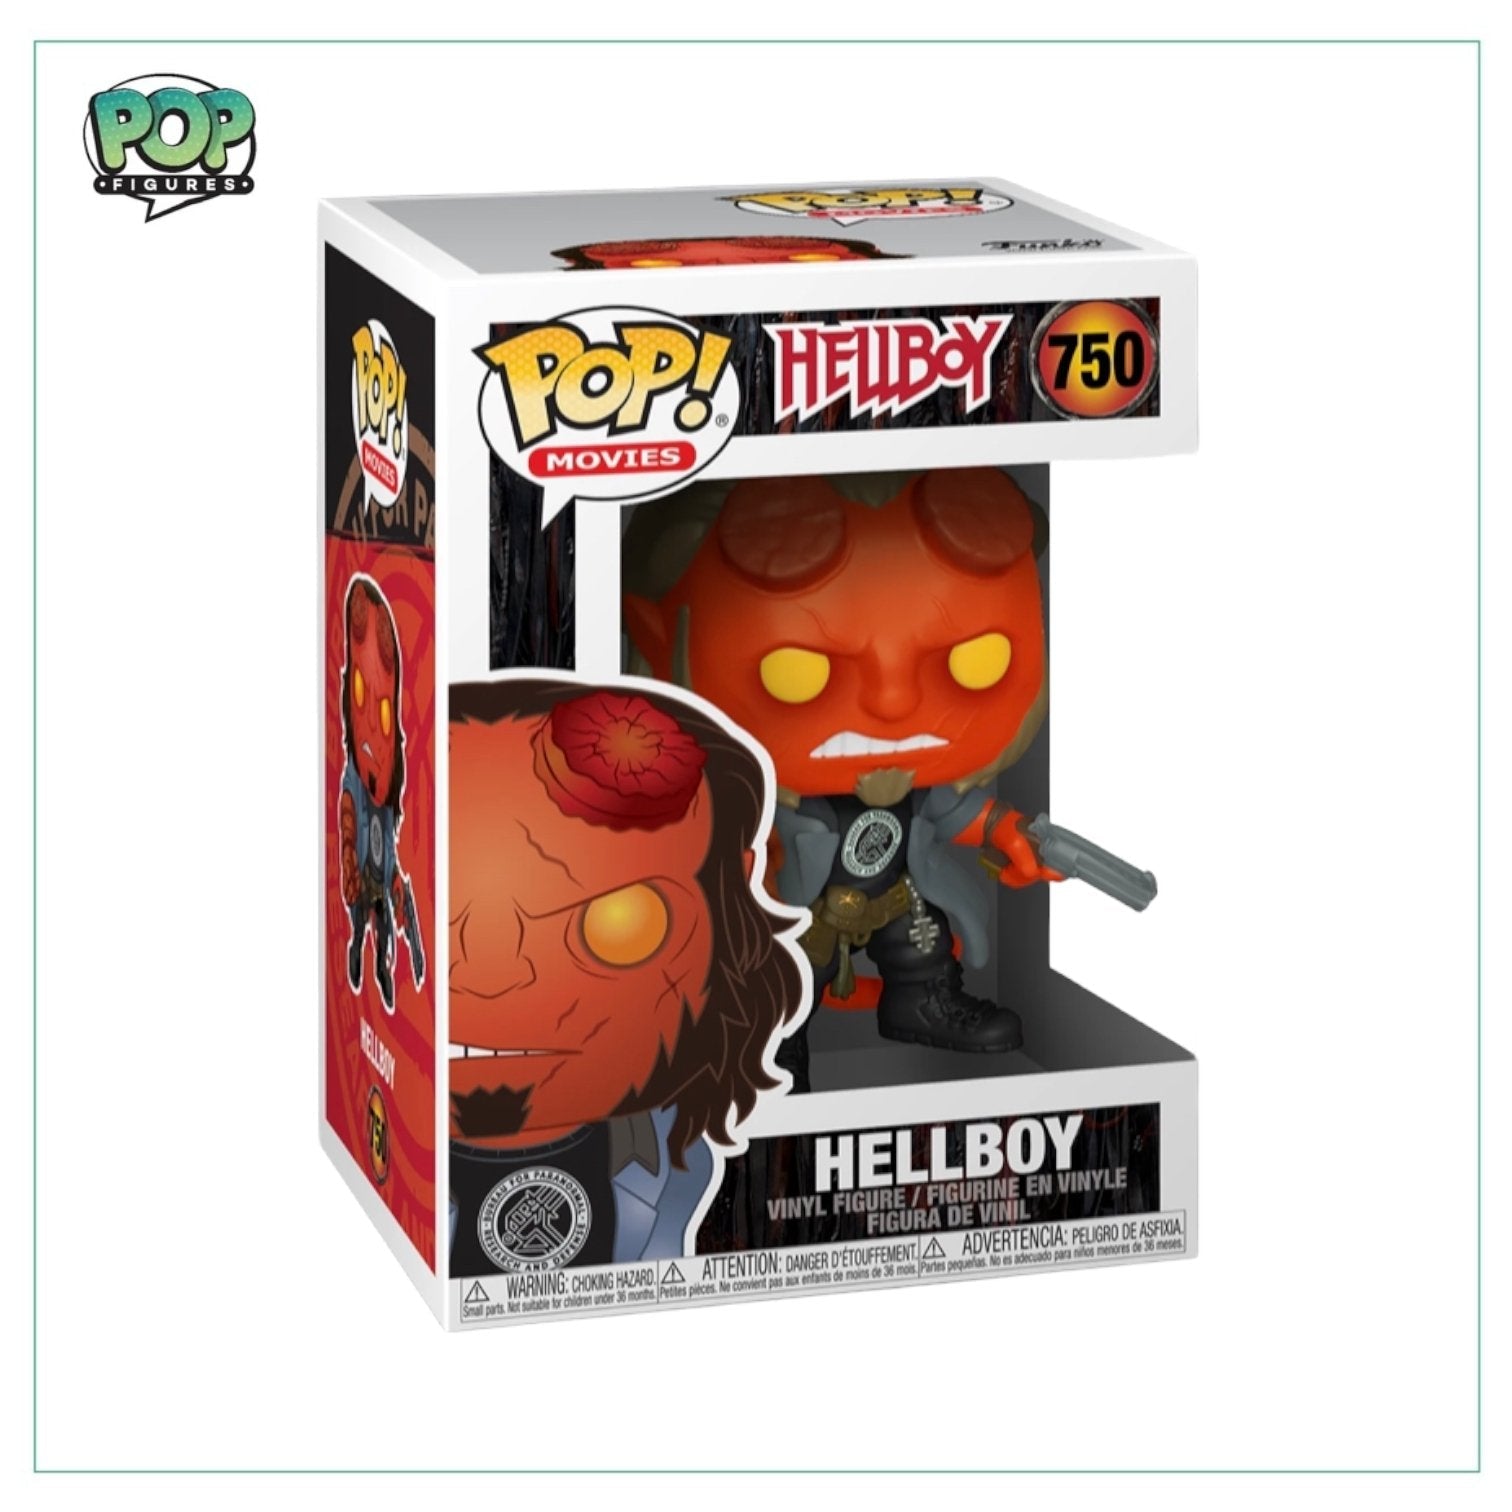 Hellboy #750 Funko Pop! - Hellboy - Angry Cat